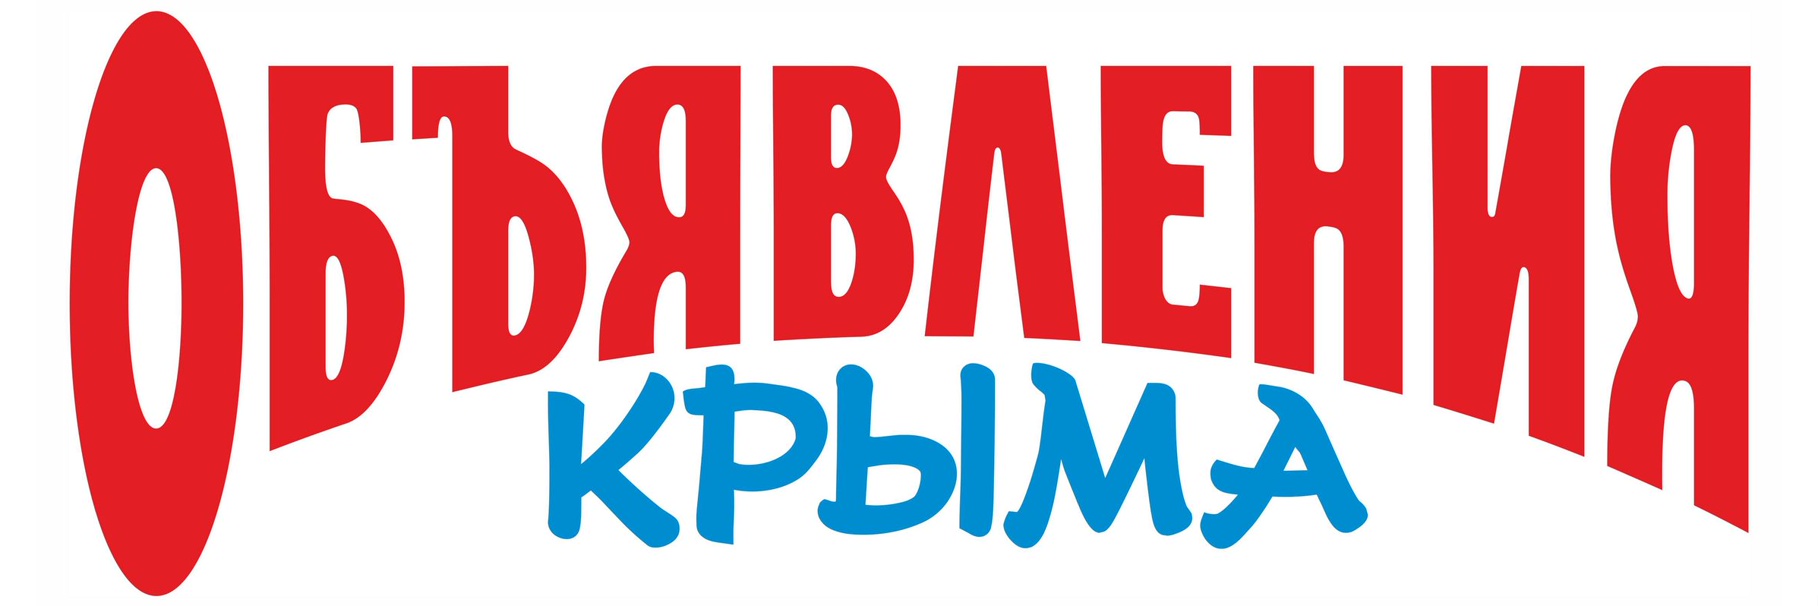 Объявления Крыма